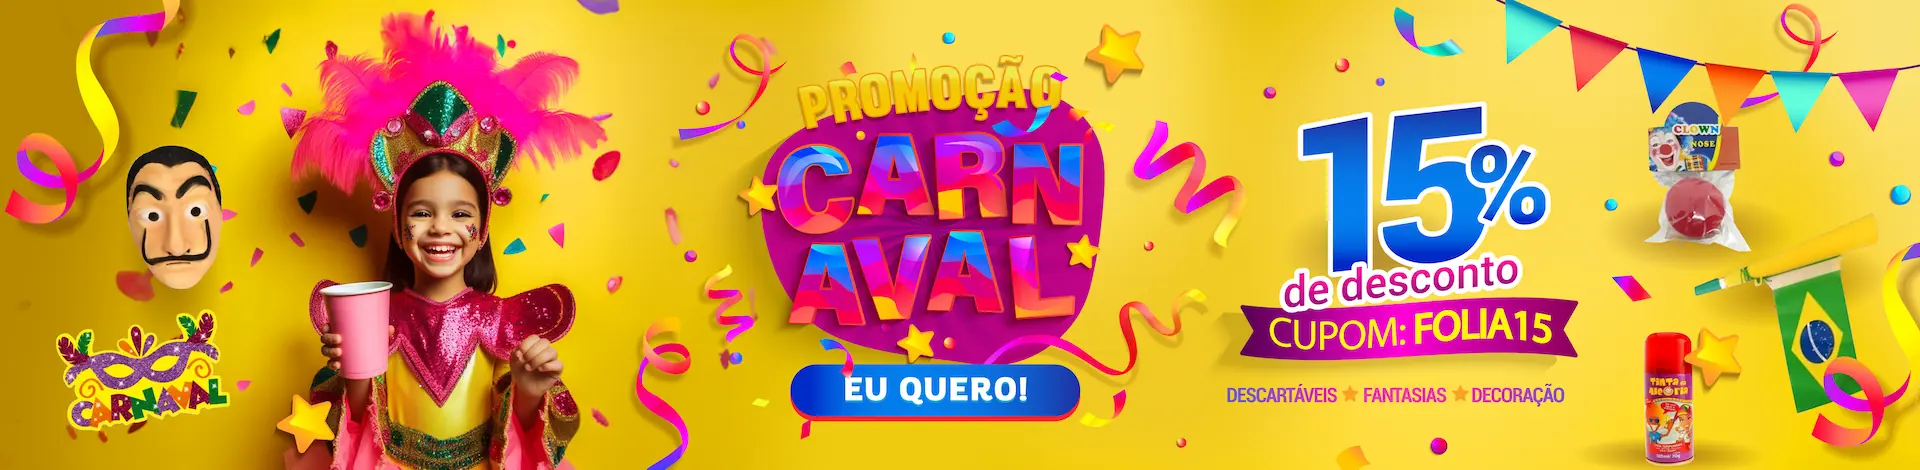 Promoção Carnaval 'Eu quero' 15% de desconto, CUPOM: FOLIA15, descartáveis, fantasias, decorações